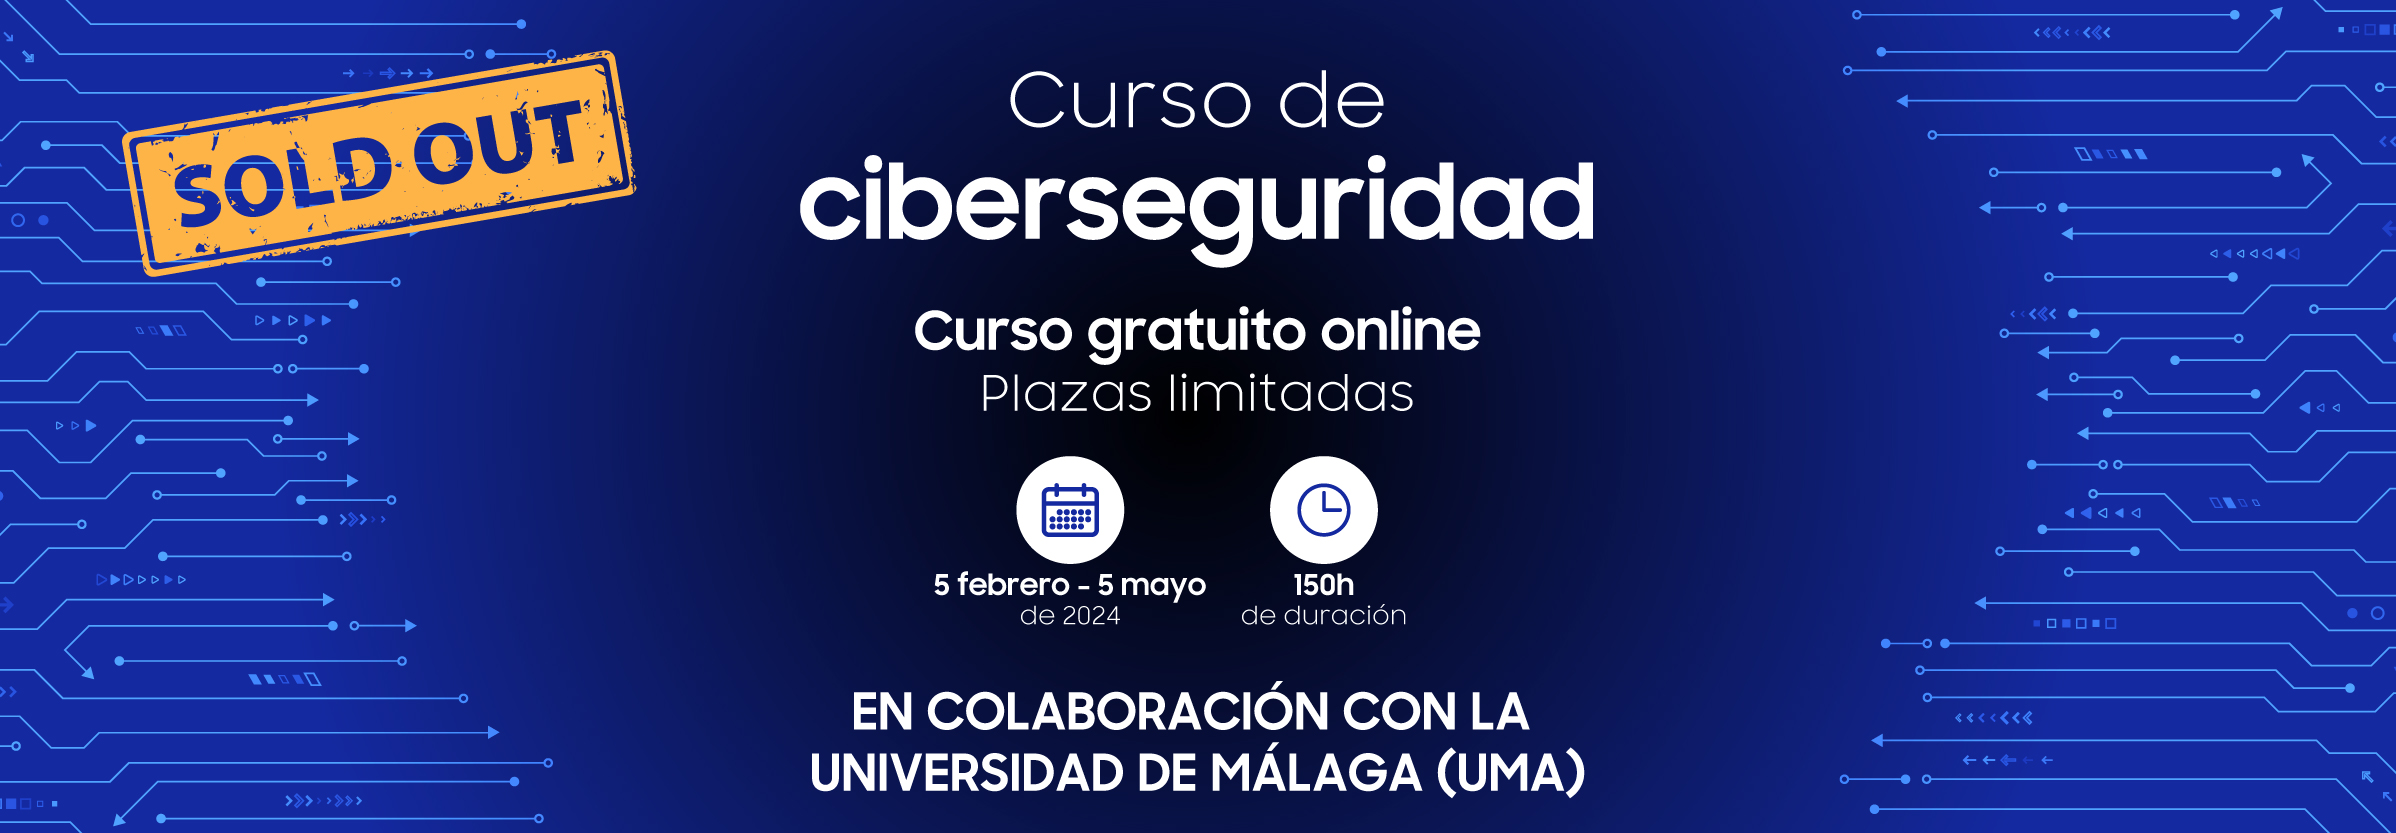 Fórmate en ciberseguridad con Samsung Dev Spain y la Universidad de Málaga (UMA)